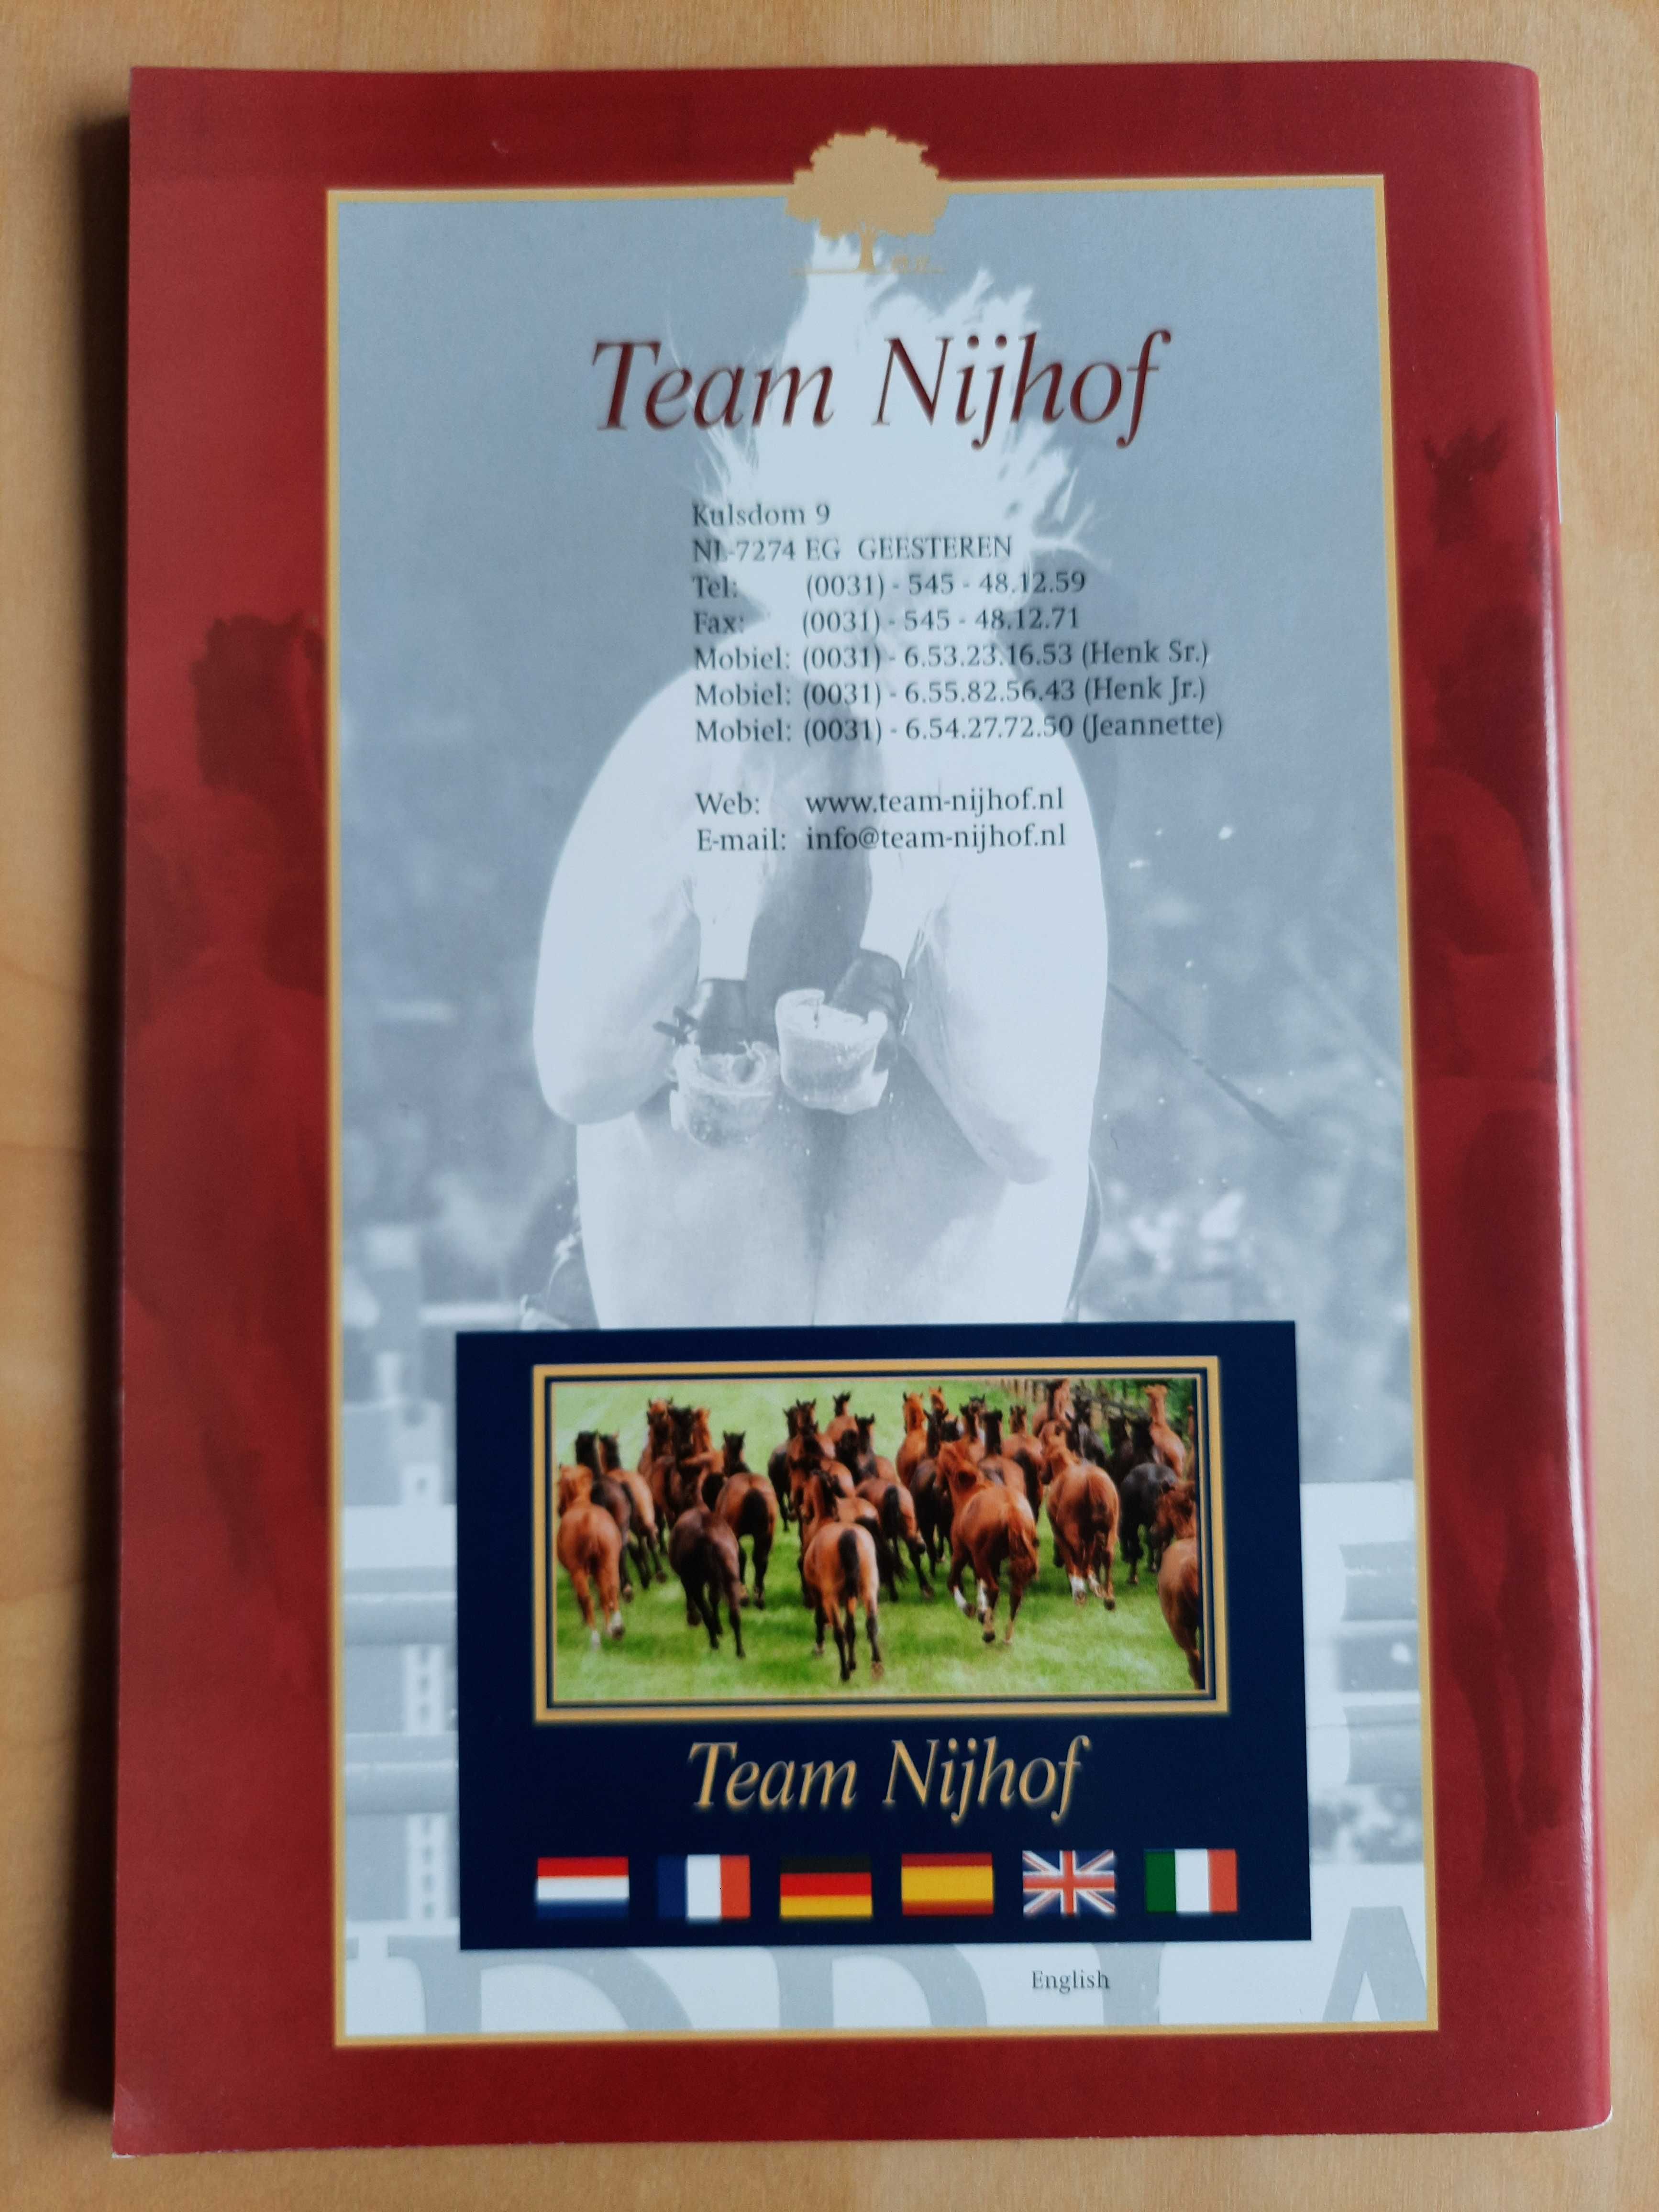 Konie - Katalog ogierów Team Nijhof 2008 - przedmiot kolekcjonerski